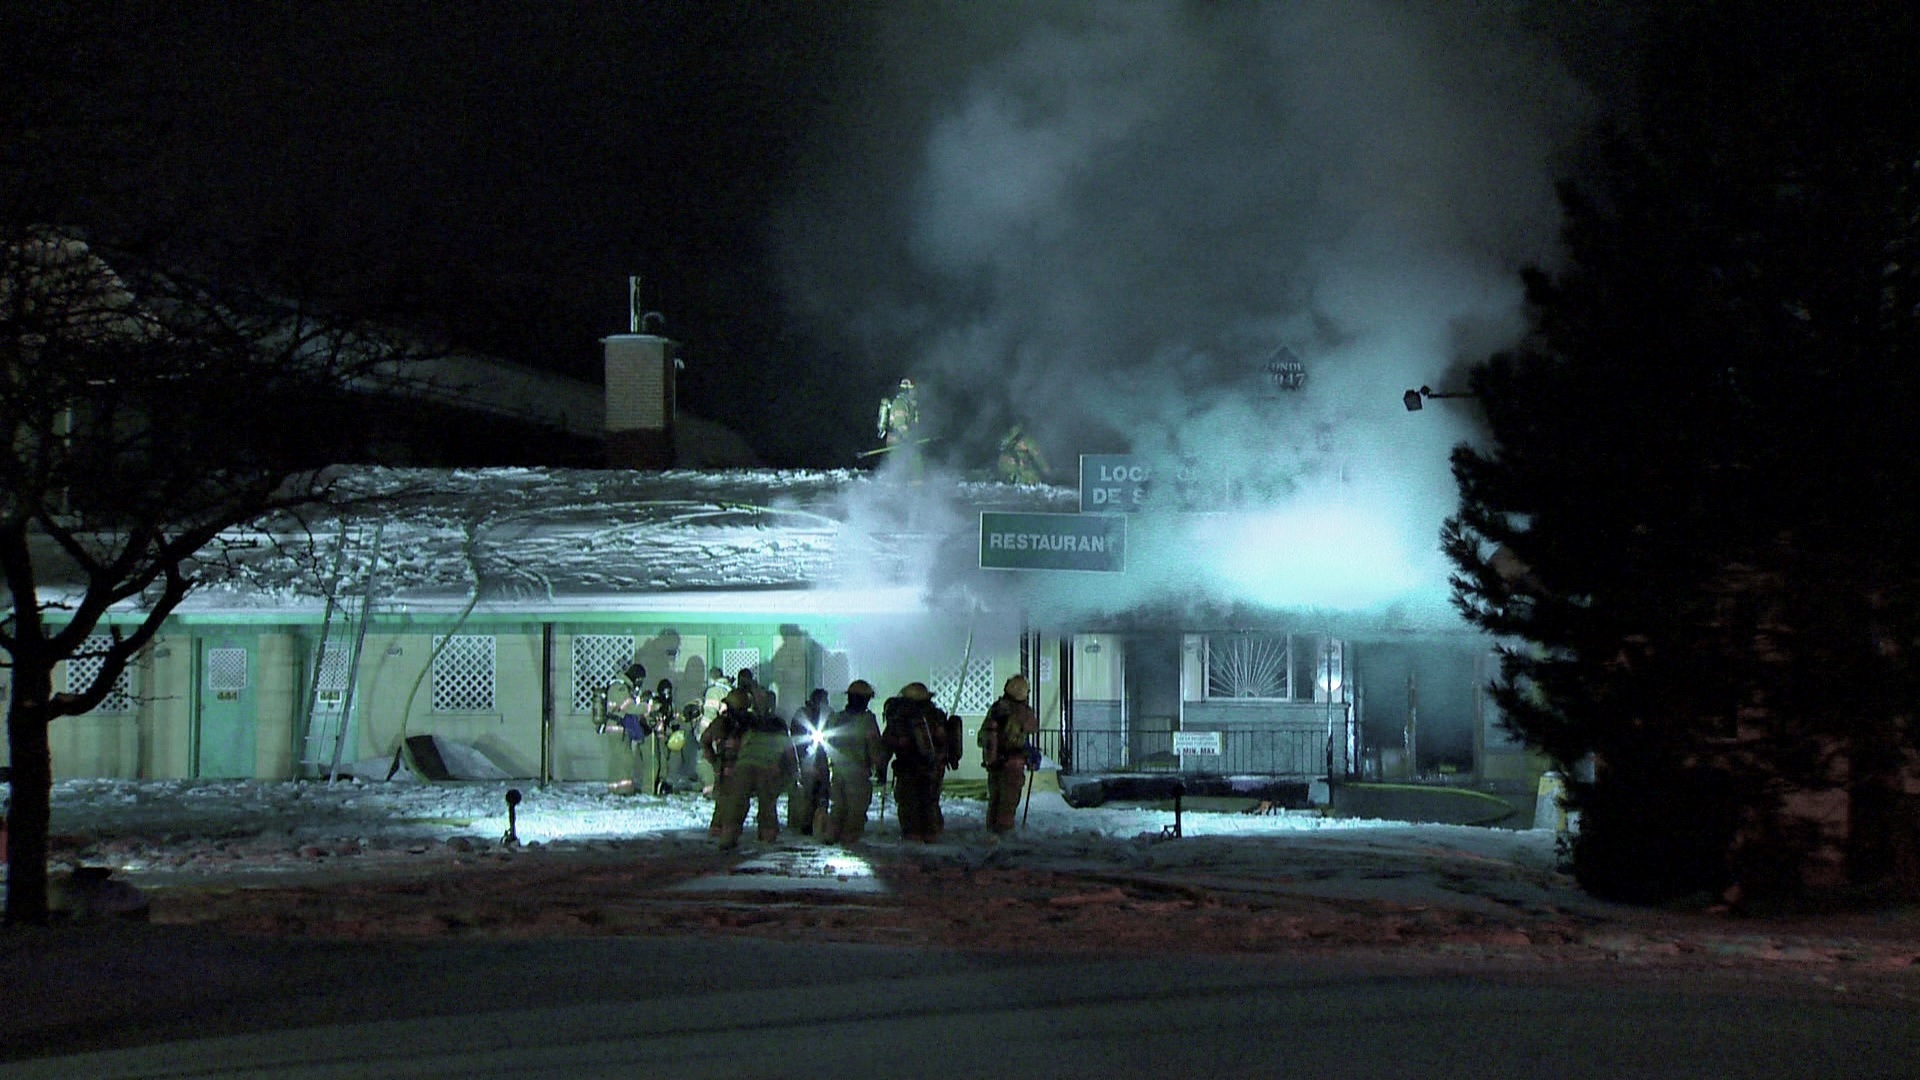 Incendie majeur à l'ancien motel Oscar du boulevard Taschereau à Longueuil. Plus de 80 pompiers ont été dépêchés sur place pour maitriser les flammes.  